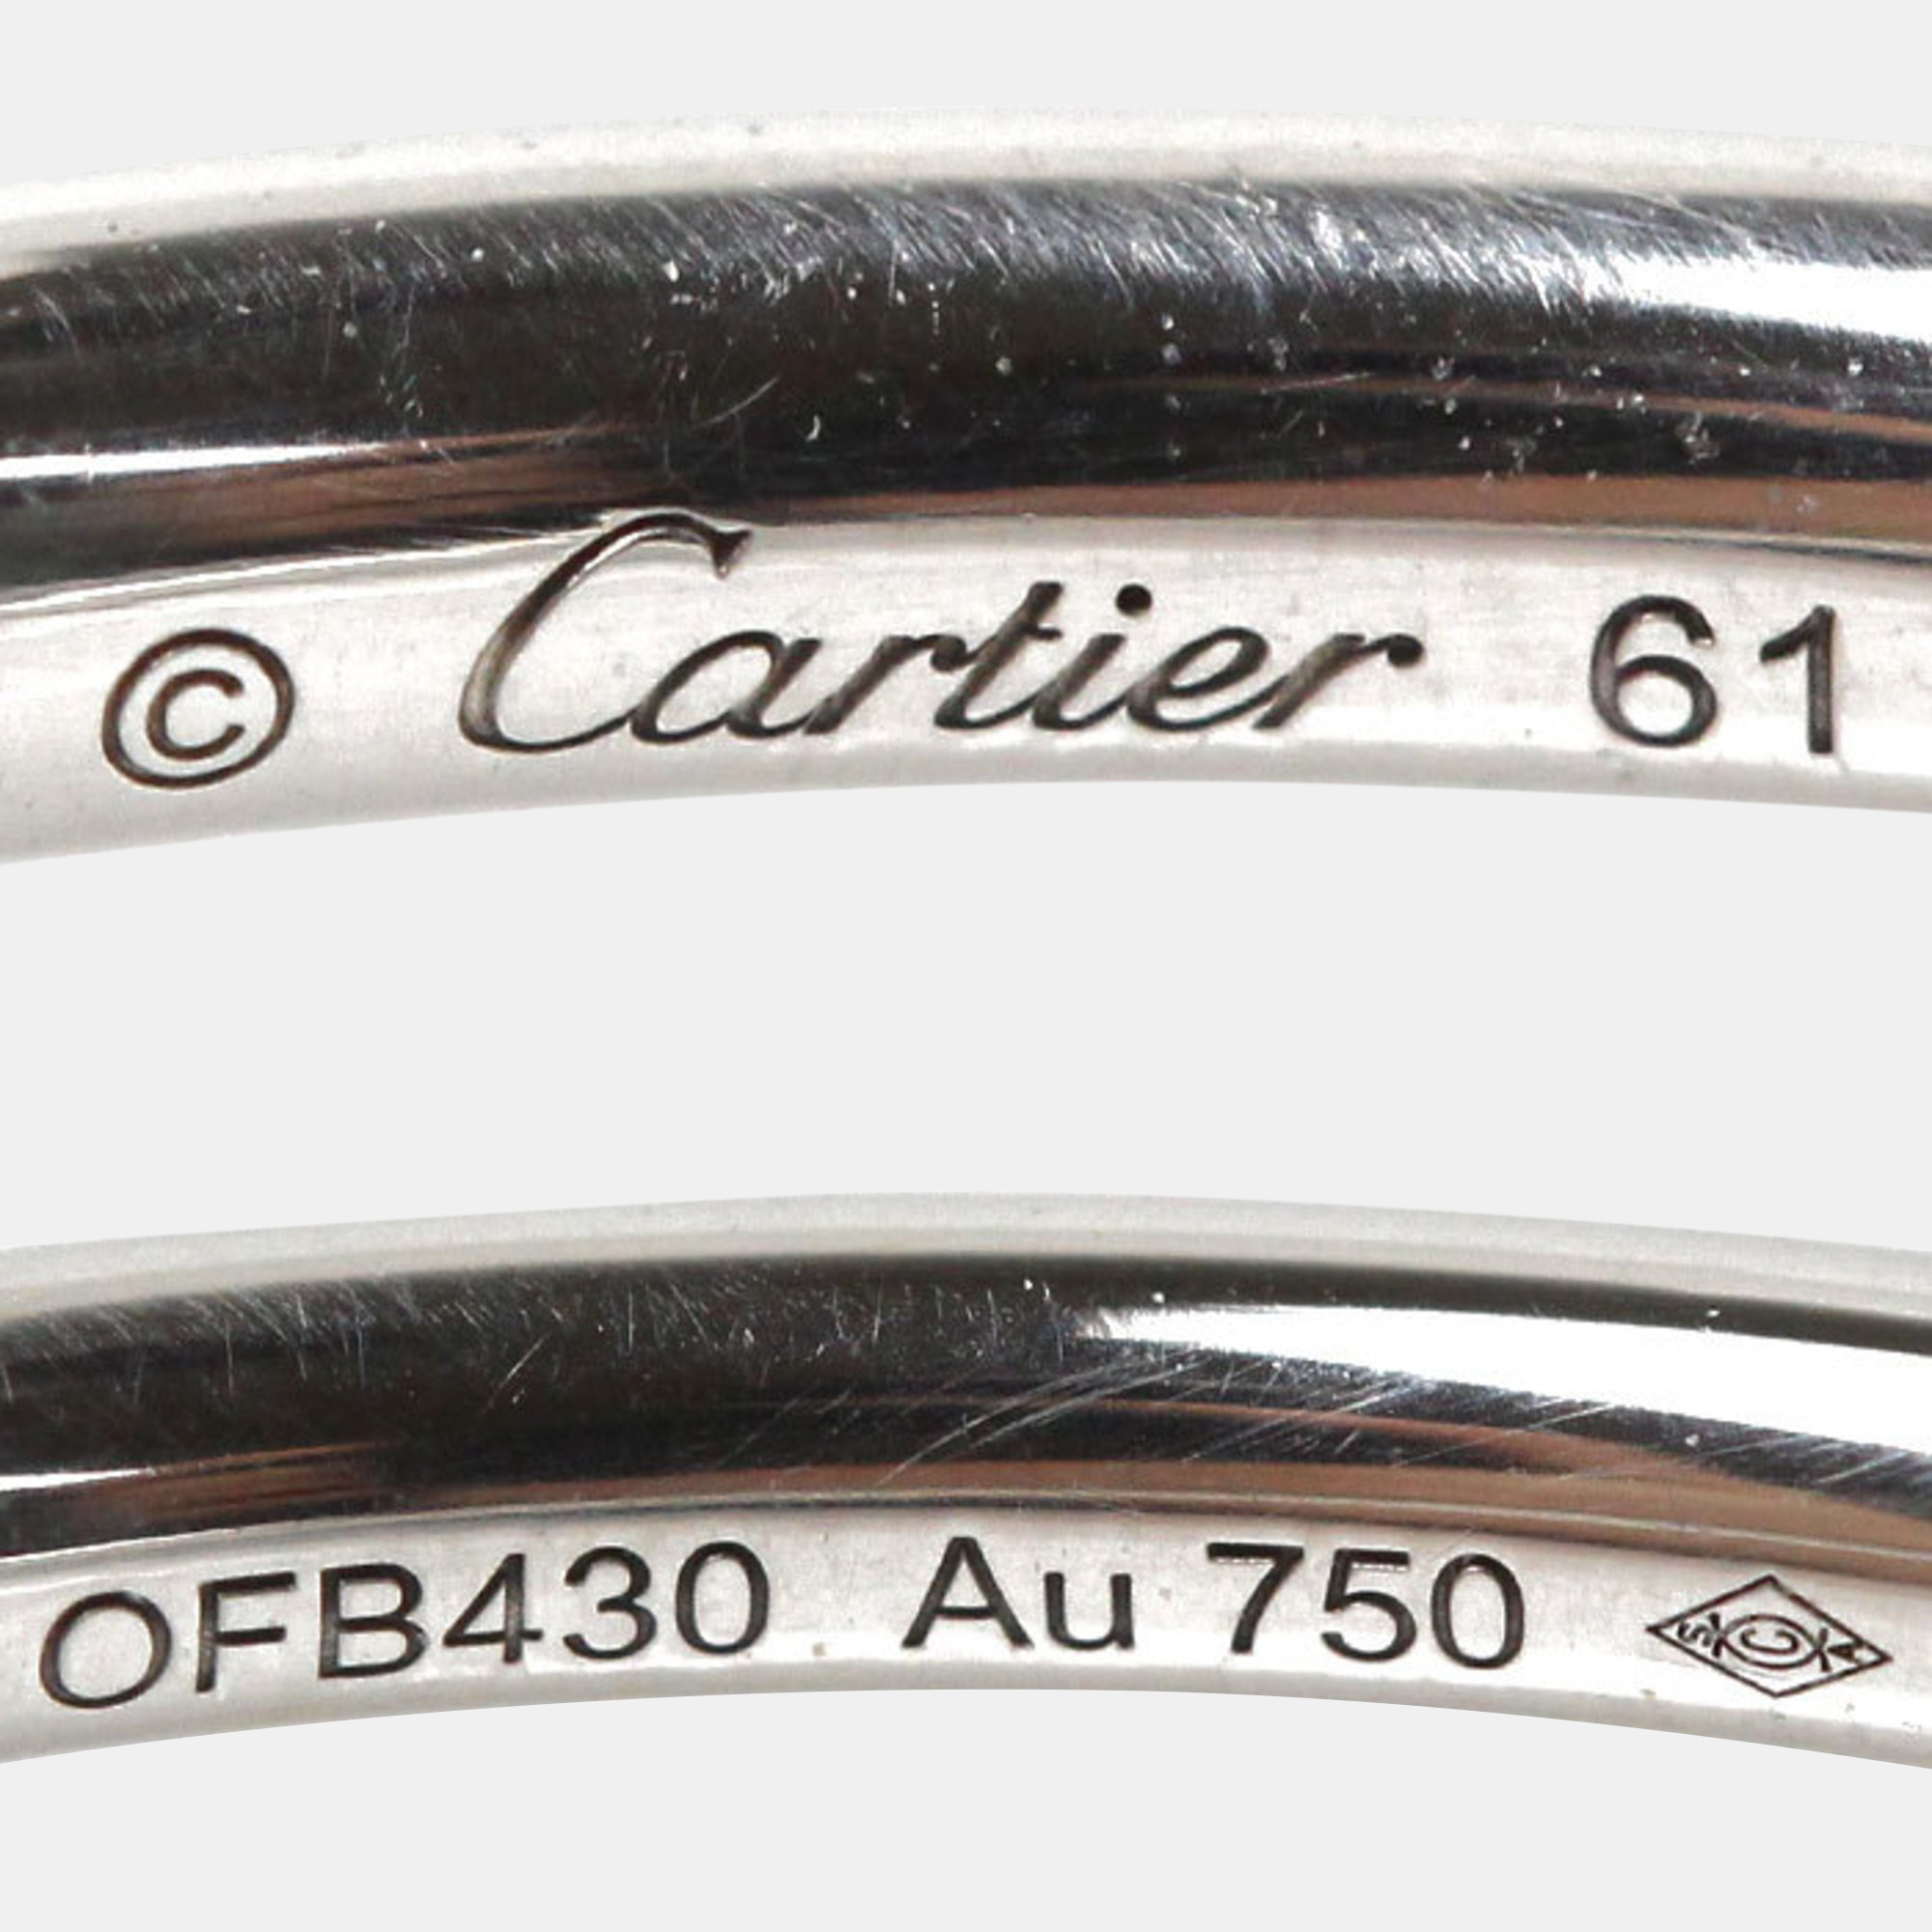 Cartier 18K White Gold Juste Un Clou Band Ring EU 61